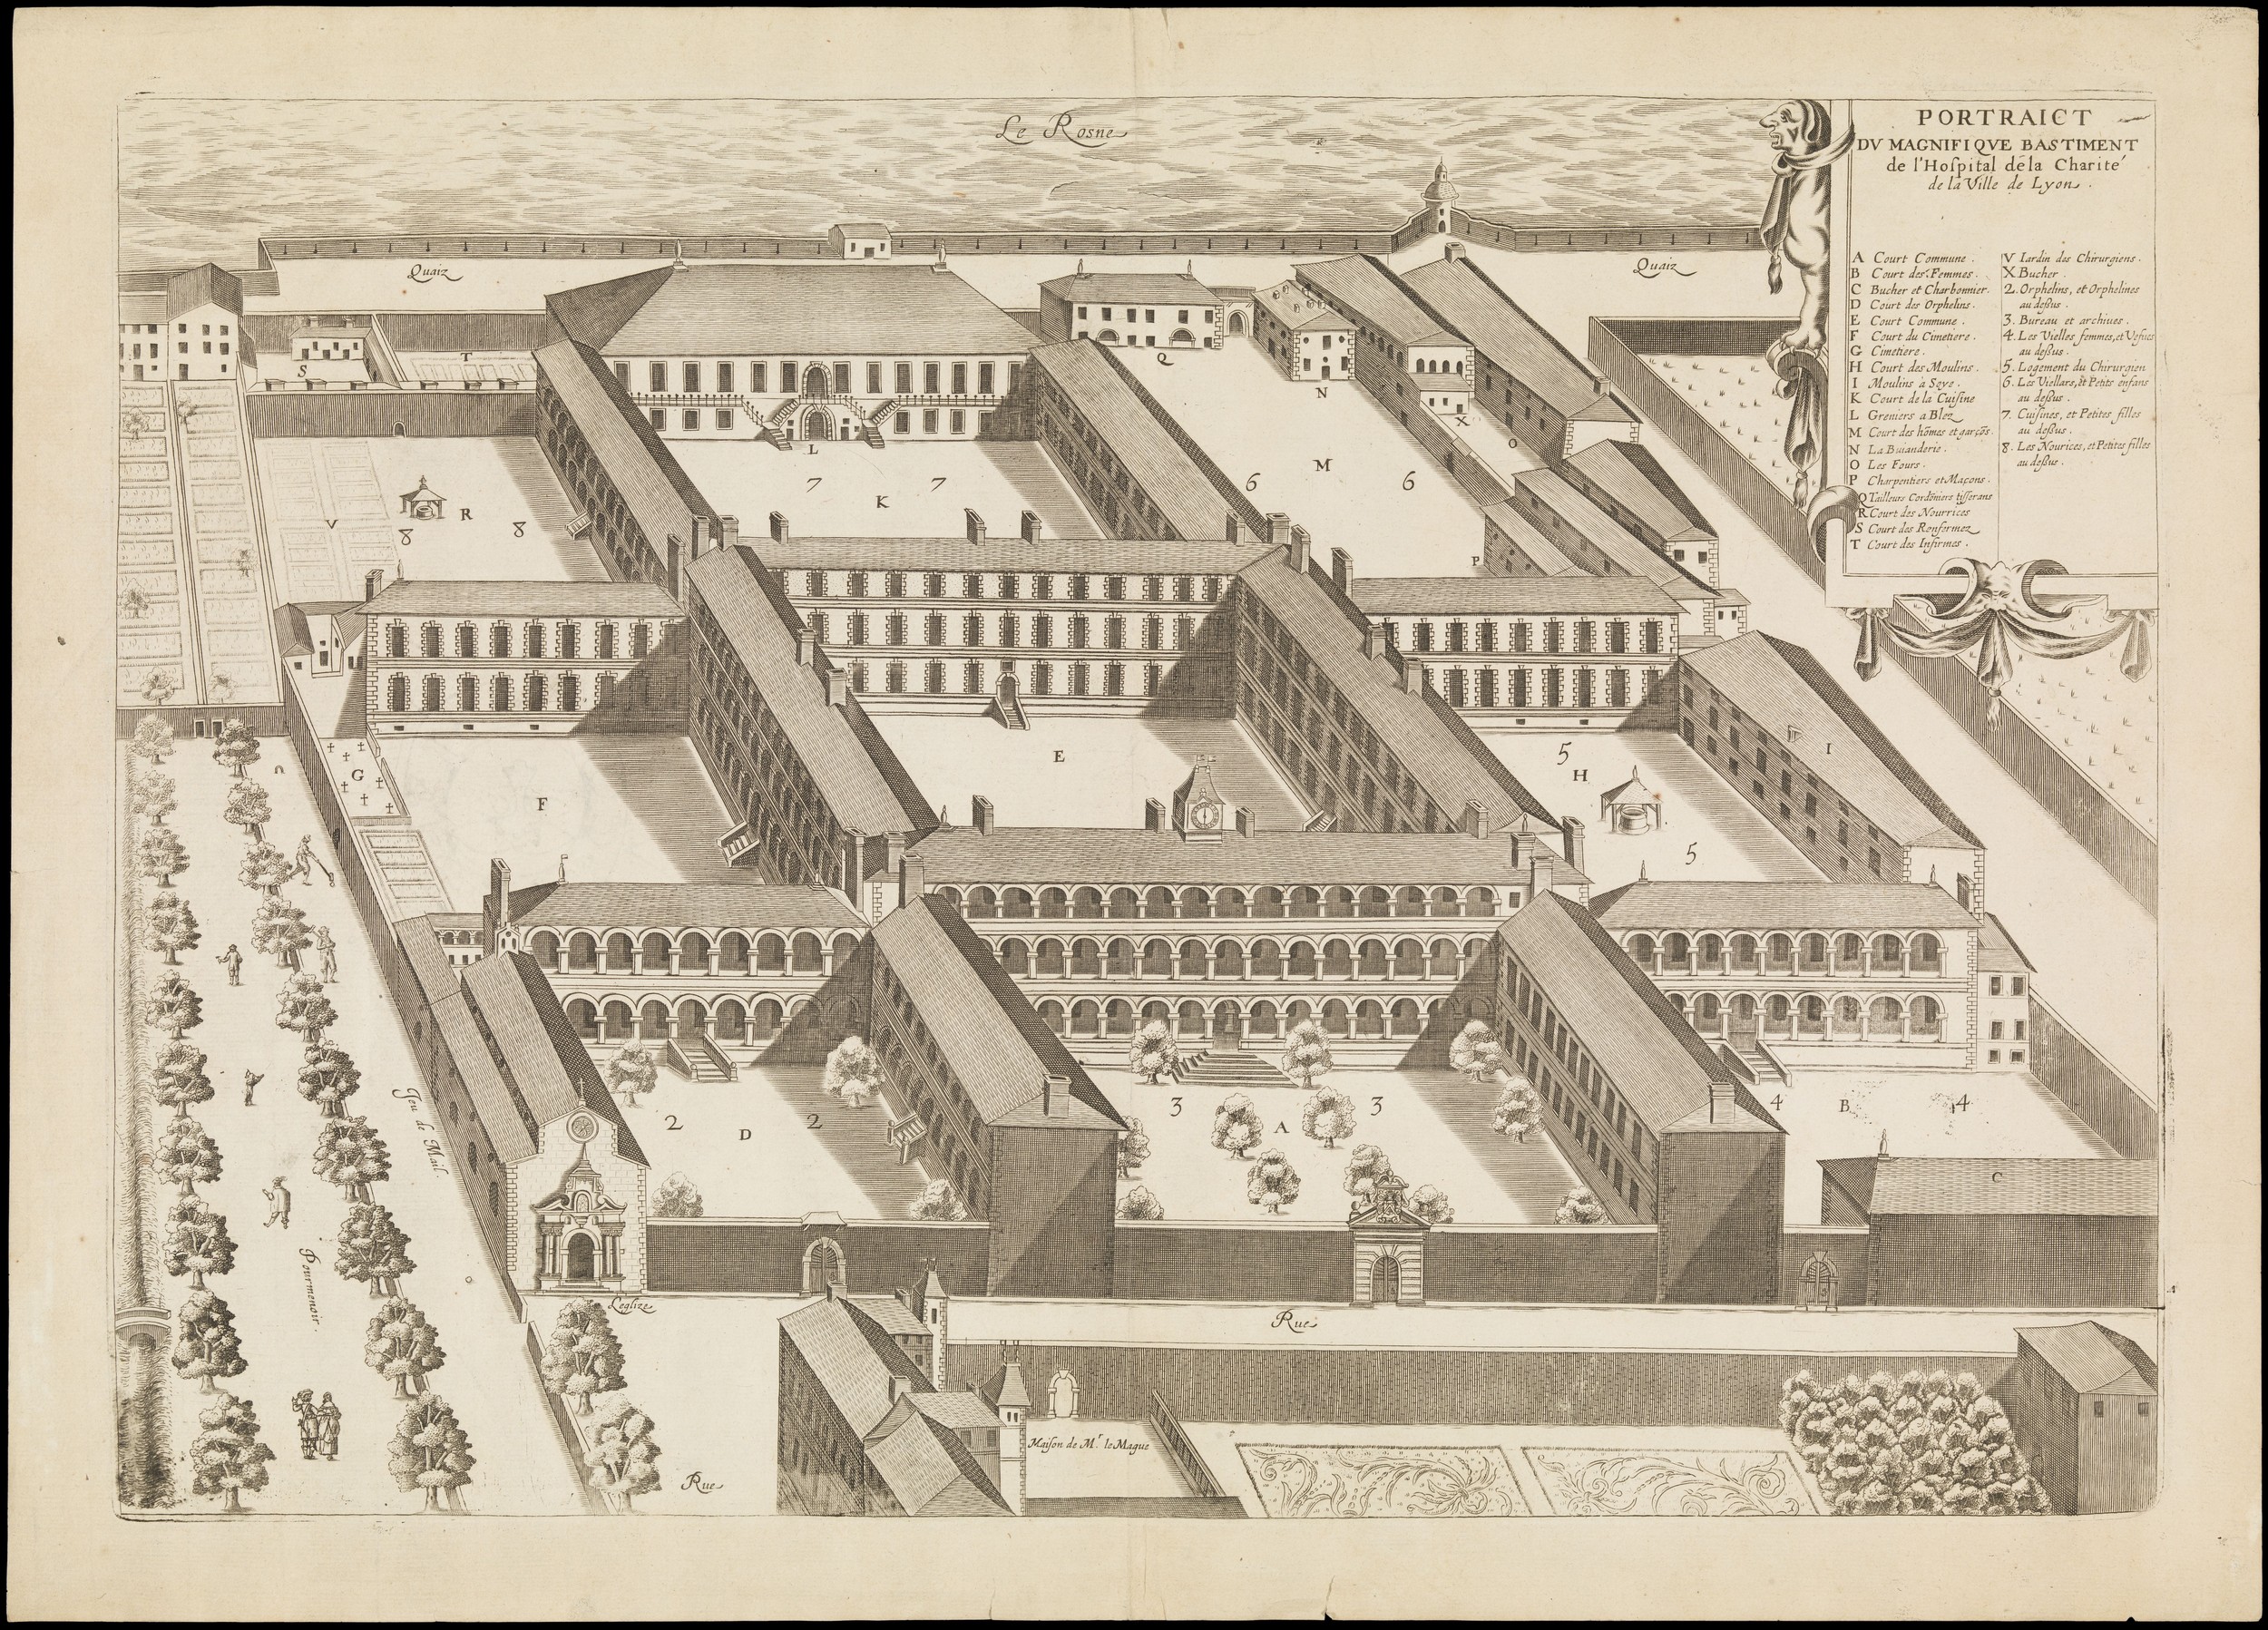 Portraict du magnifique bastiment de l'Hospital de la Charité de la Ville de Lyon : estampe (1646, cote : CH/B/417)